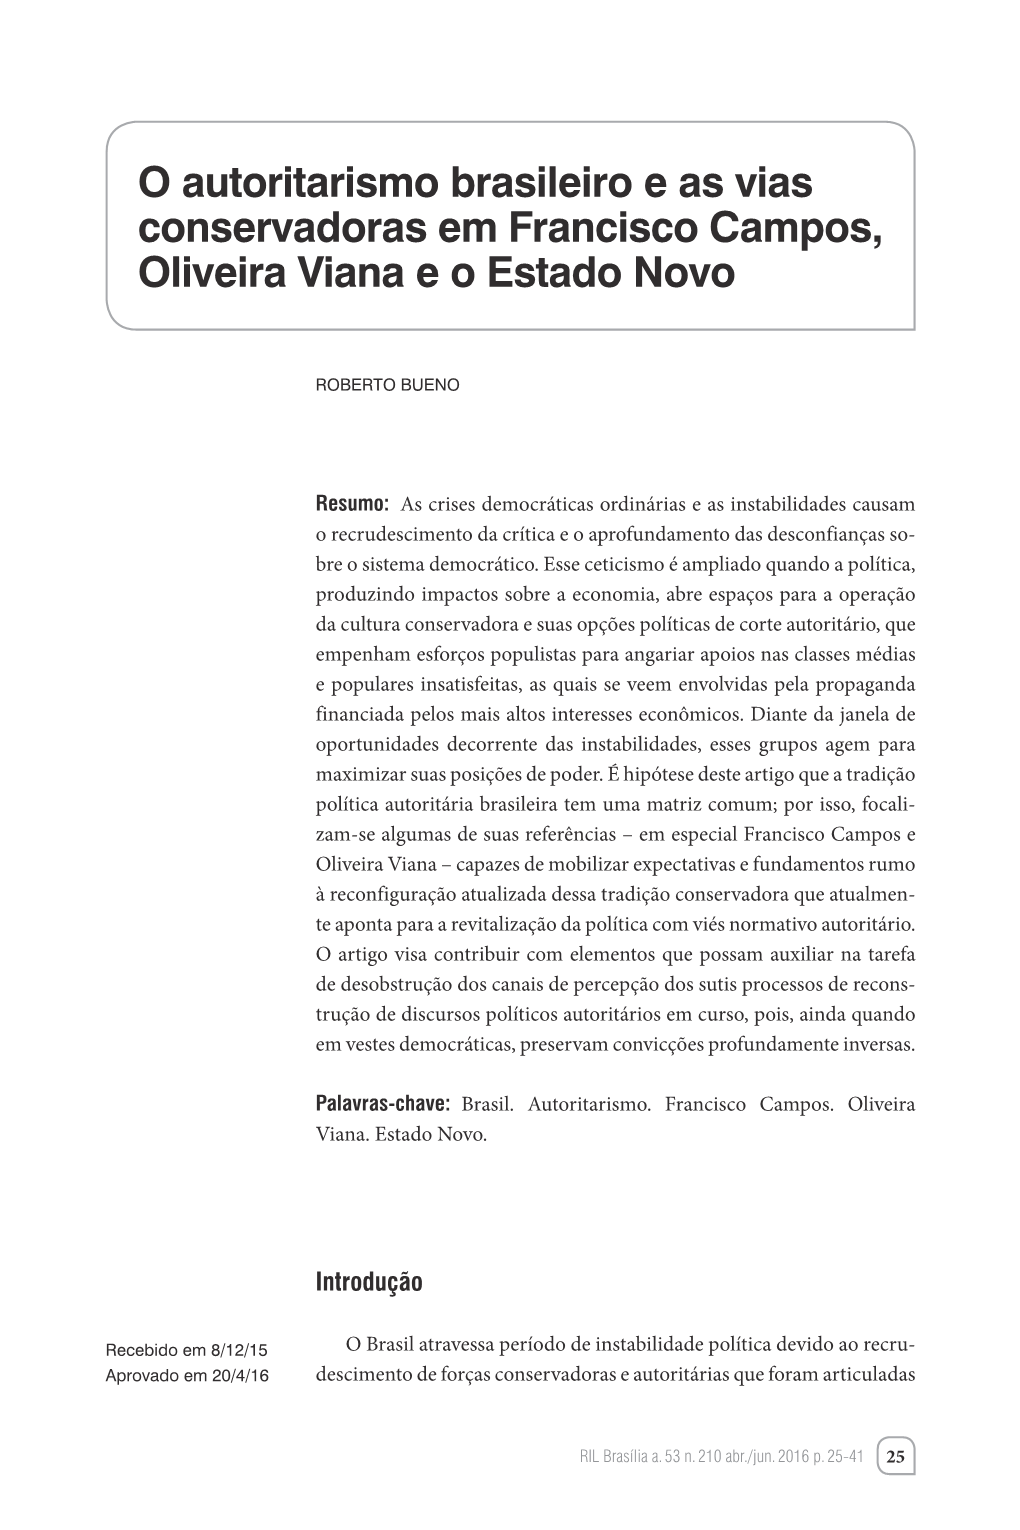 O Autoritarismo Brasileiro E As Vias Conservadoras Em Francisco Campos, Oliveira Viana E O Estado Novo